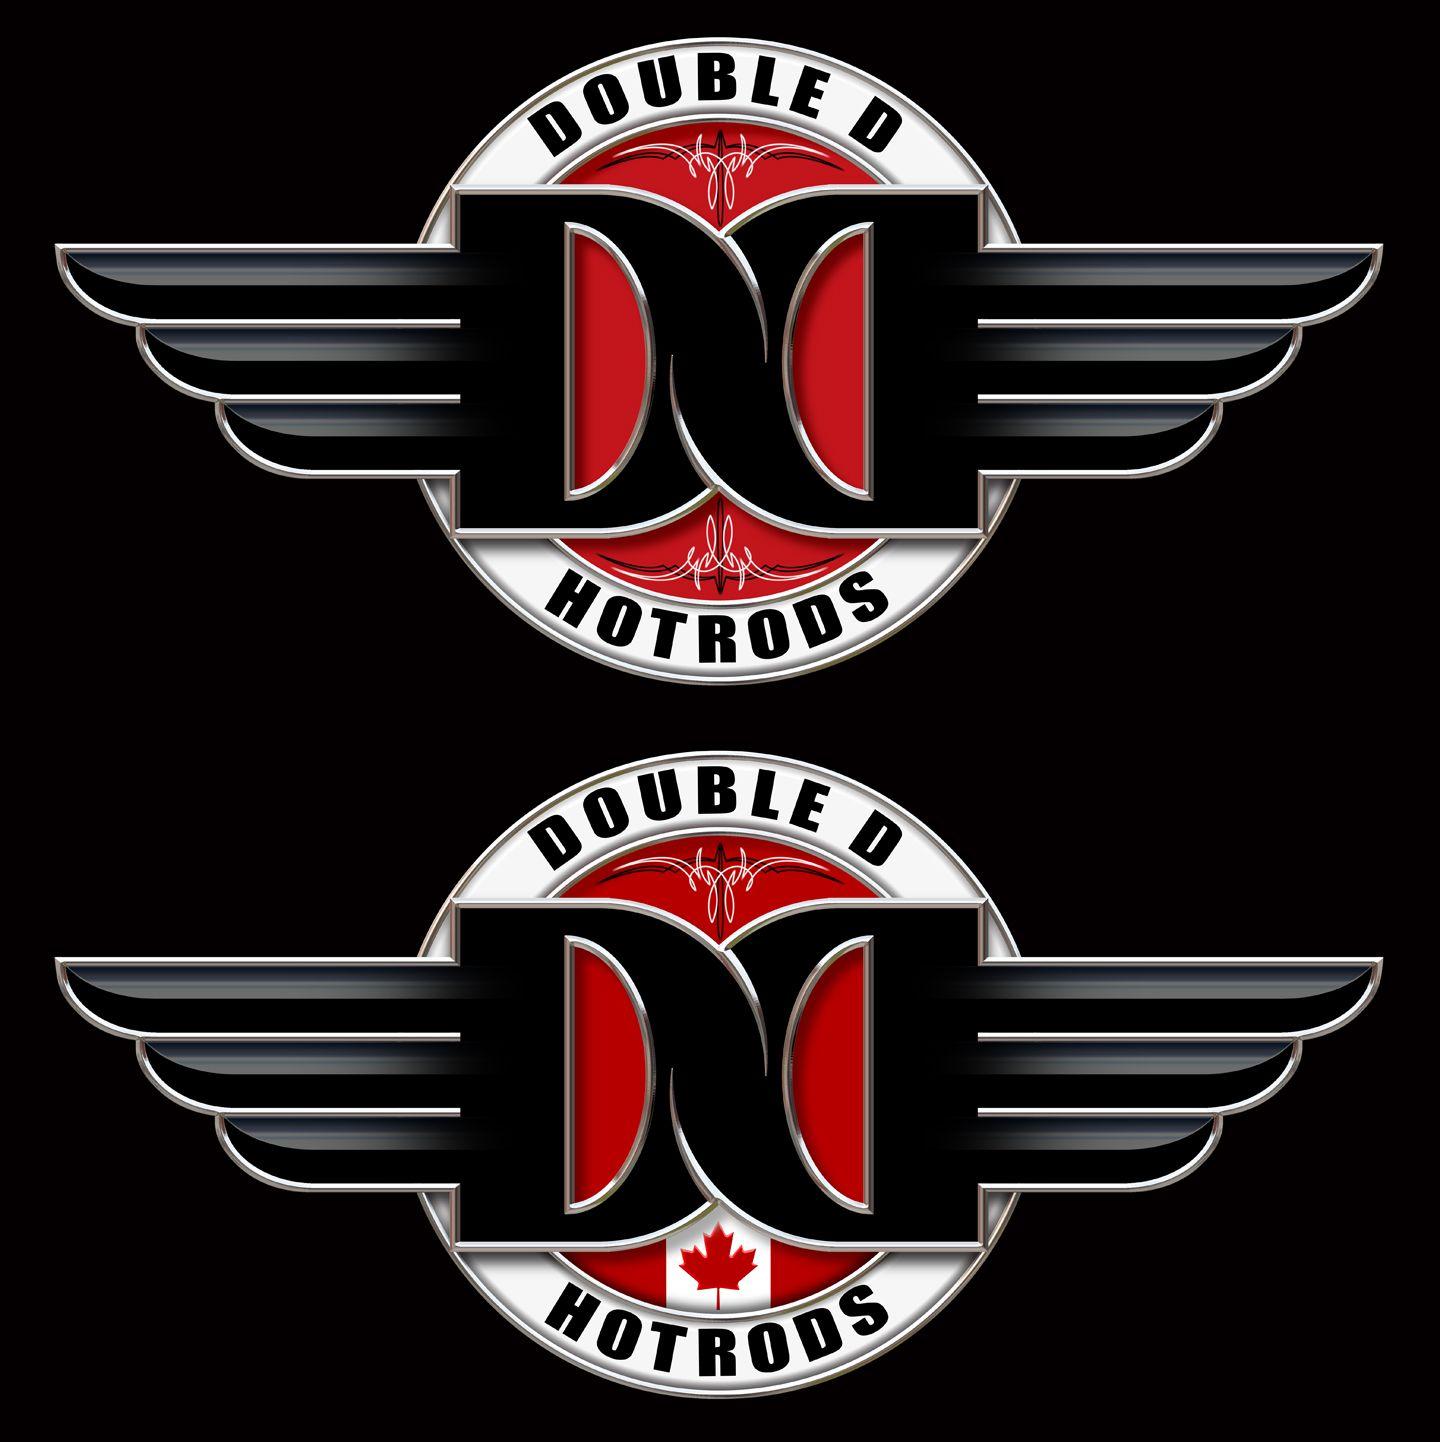 Double D-Logo Logo - Automotive Logo Design for Double D Hotrods by satz31. Design